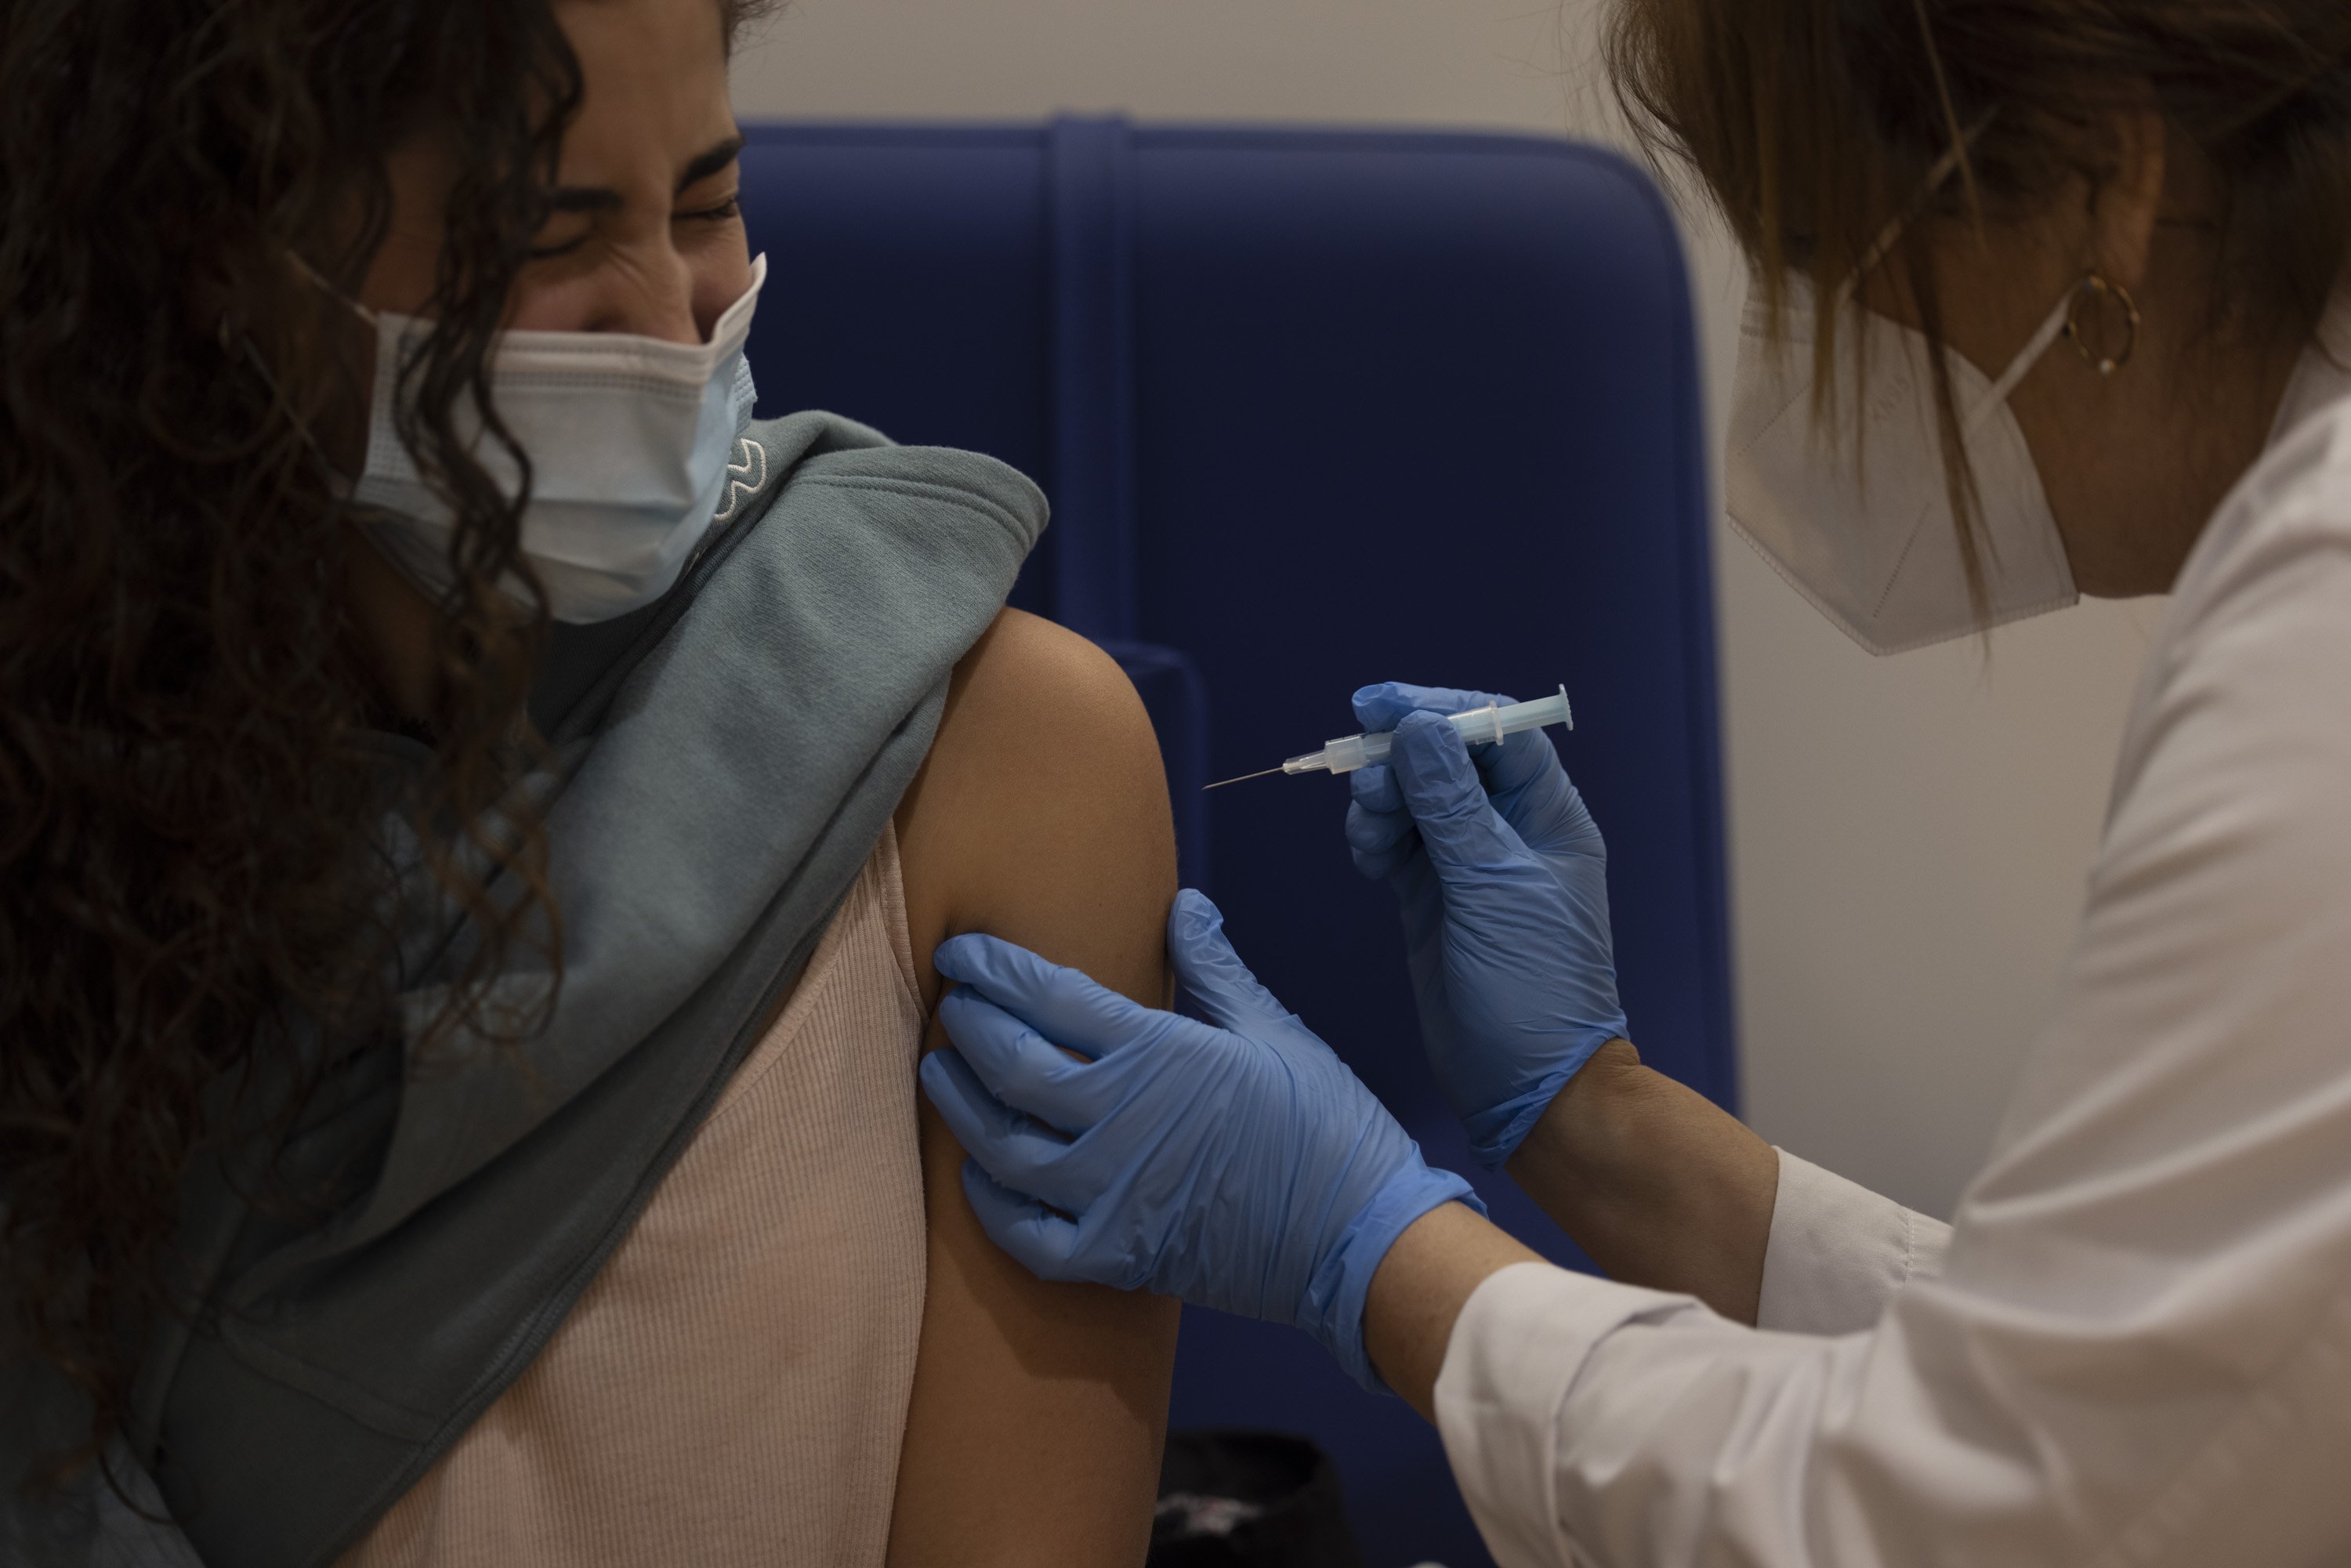 La lucha contra la covid-19 avanza "a dos velocidades" por la diferencia de vacunación entre países ricos y pobres